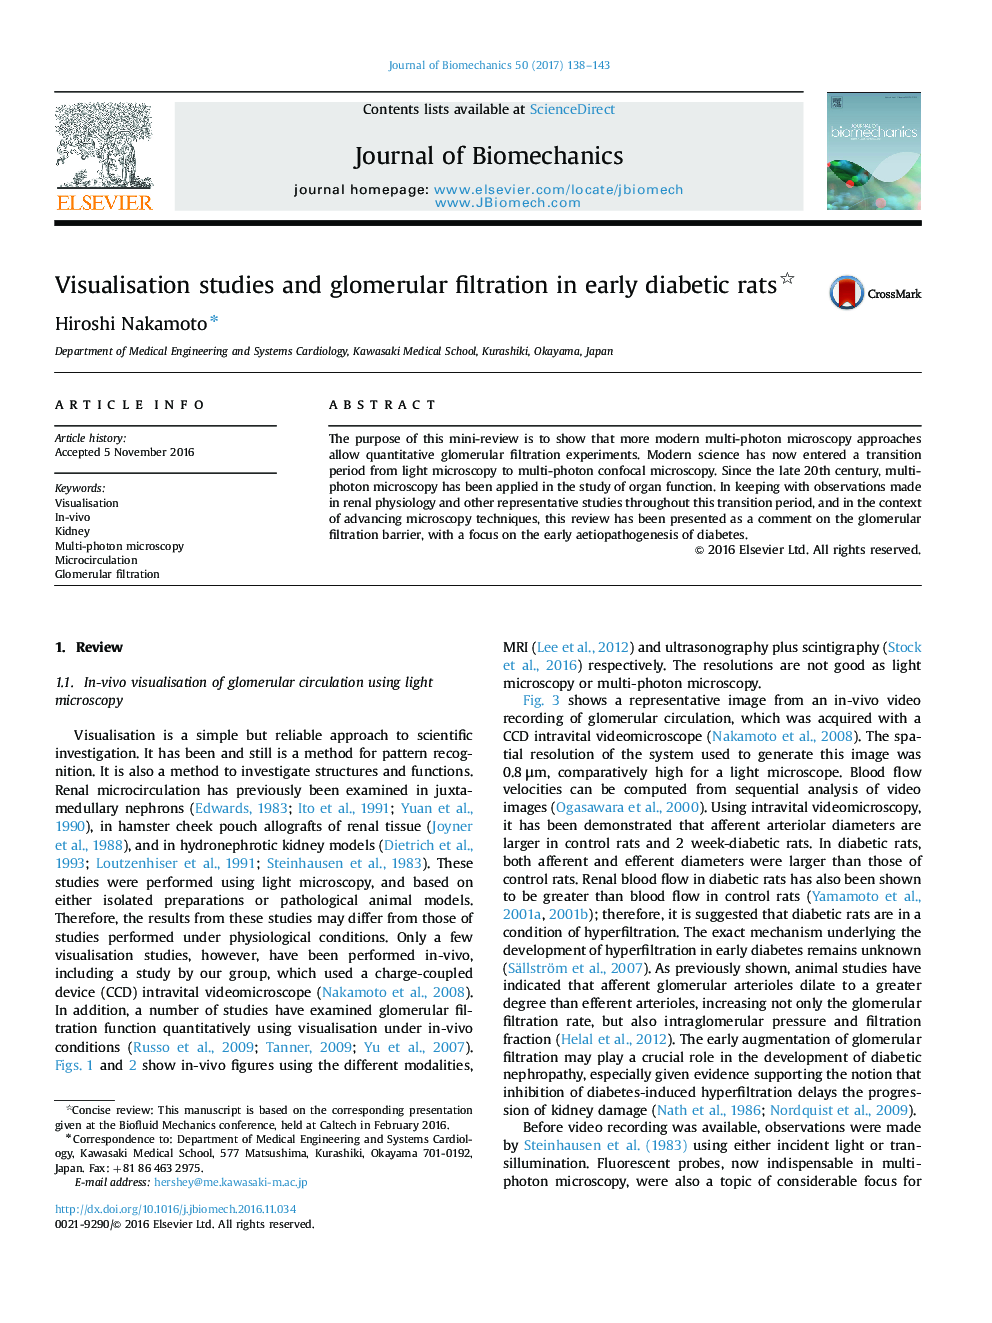 مطالعات تجسم و فیلتراسیون گلومرولی در موشهای مبتلا به دیابتی 